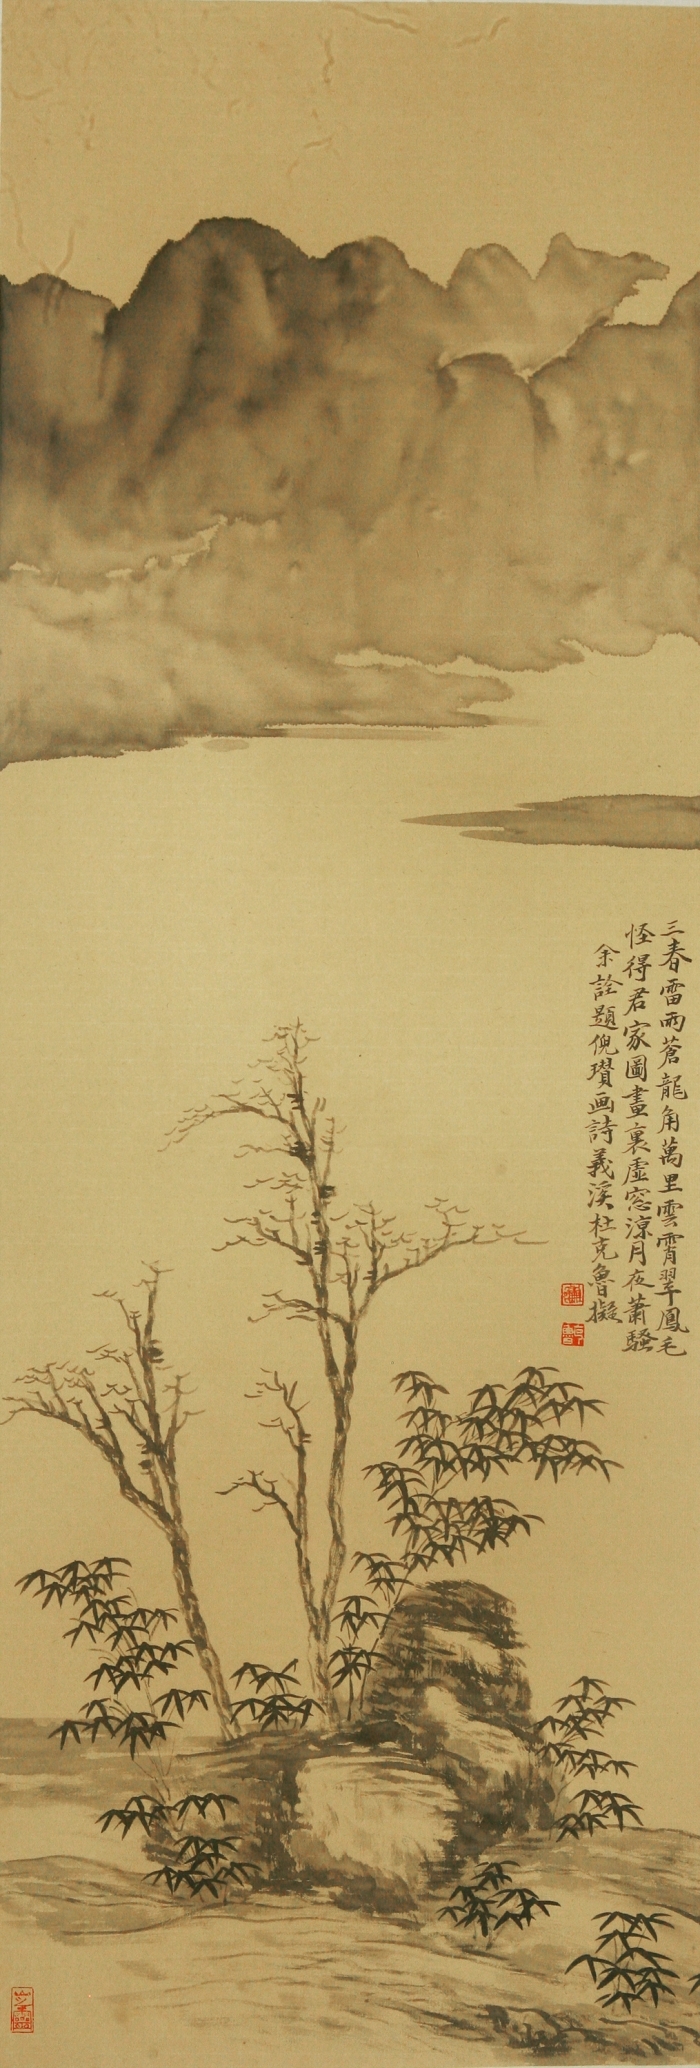 Galerie Fenghe Tang Chinesische Kunst - Der frühe Gebrauch für Heute 3